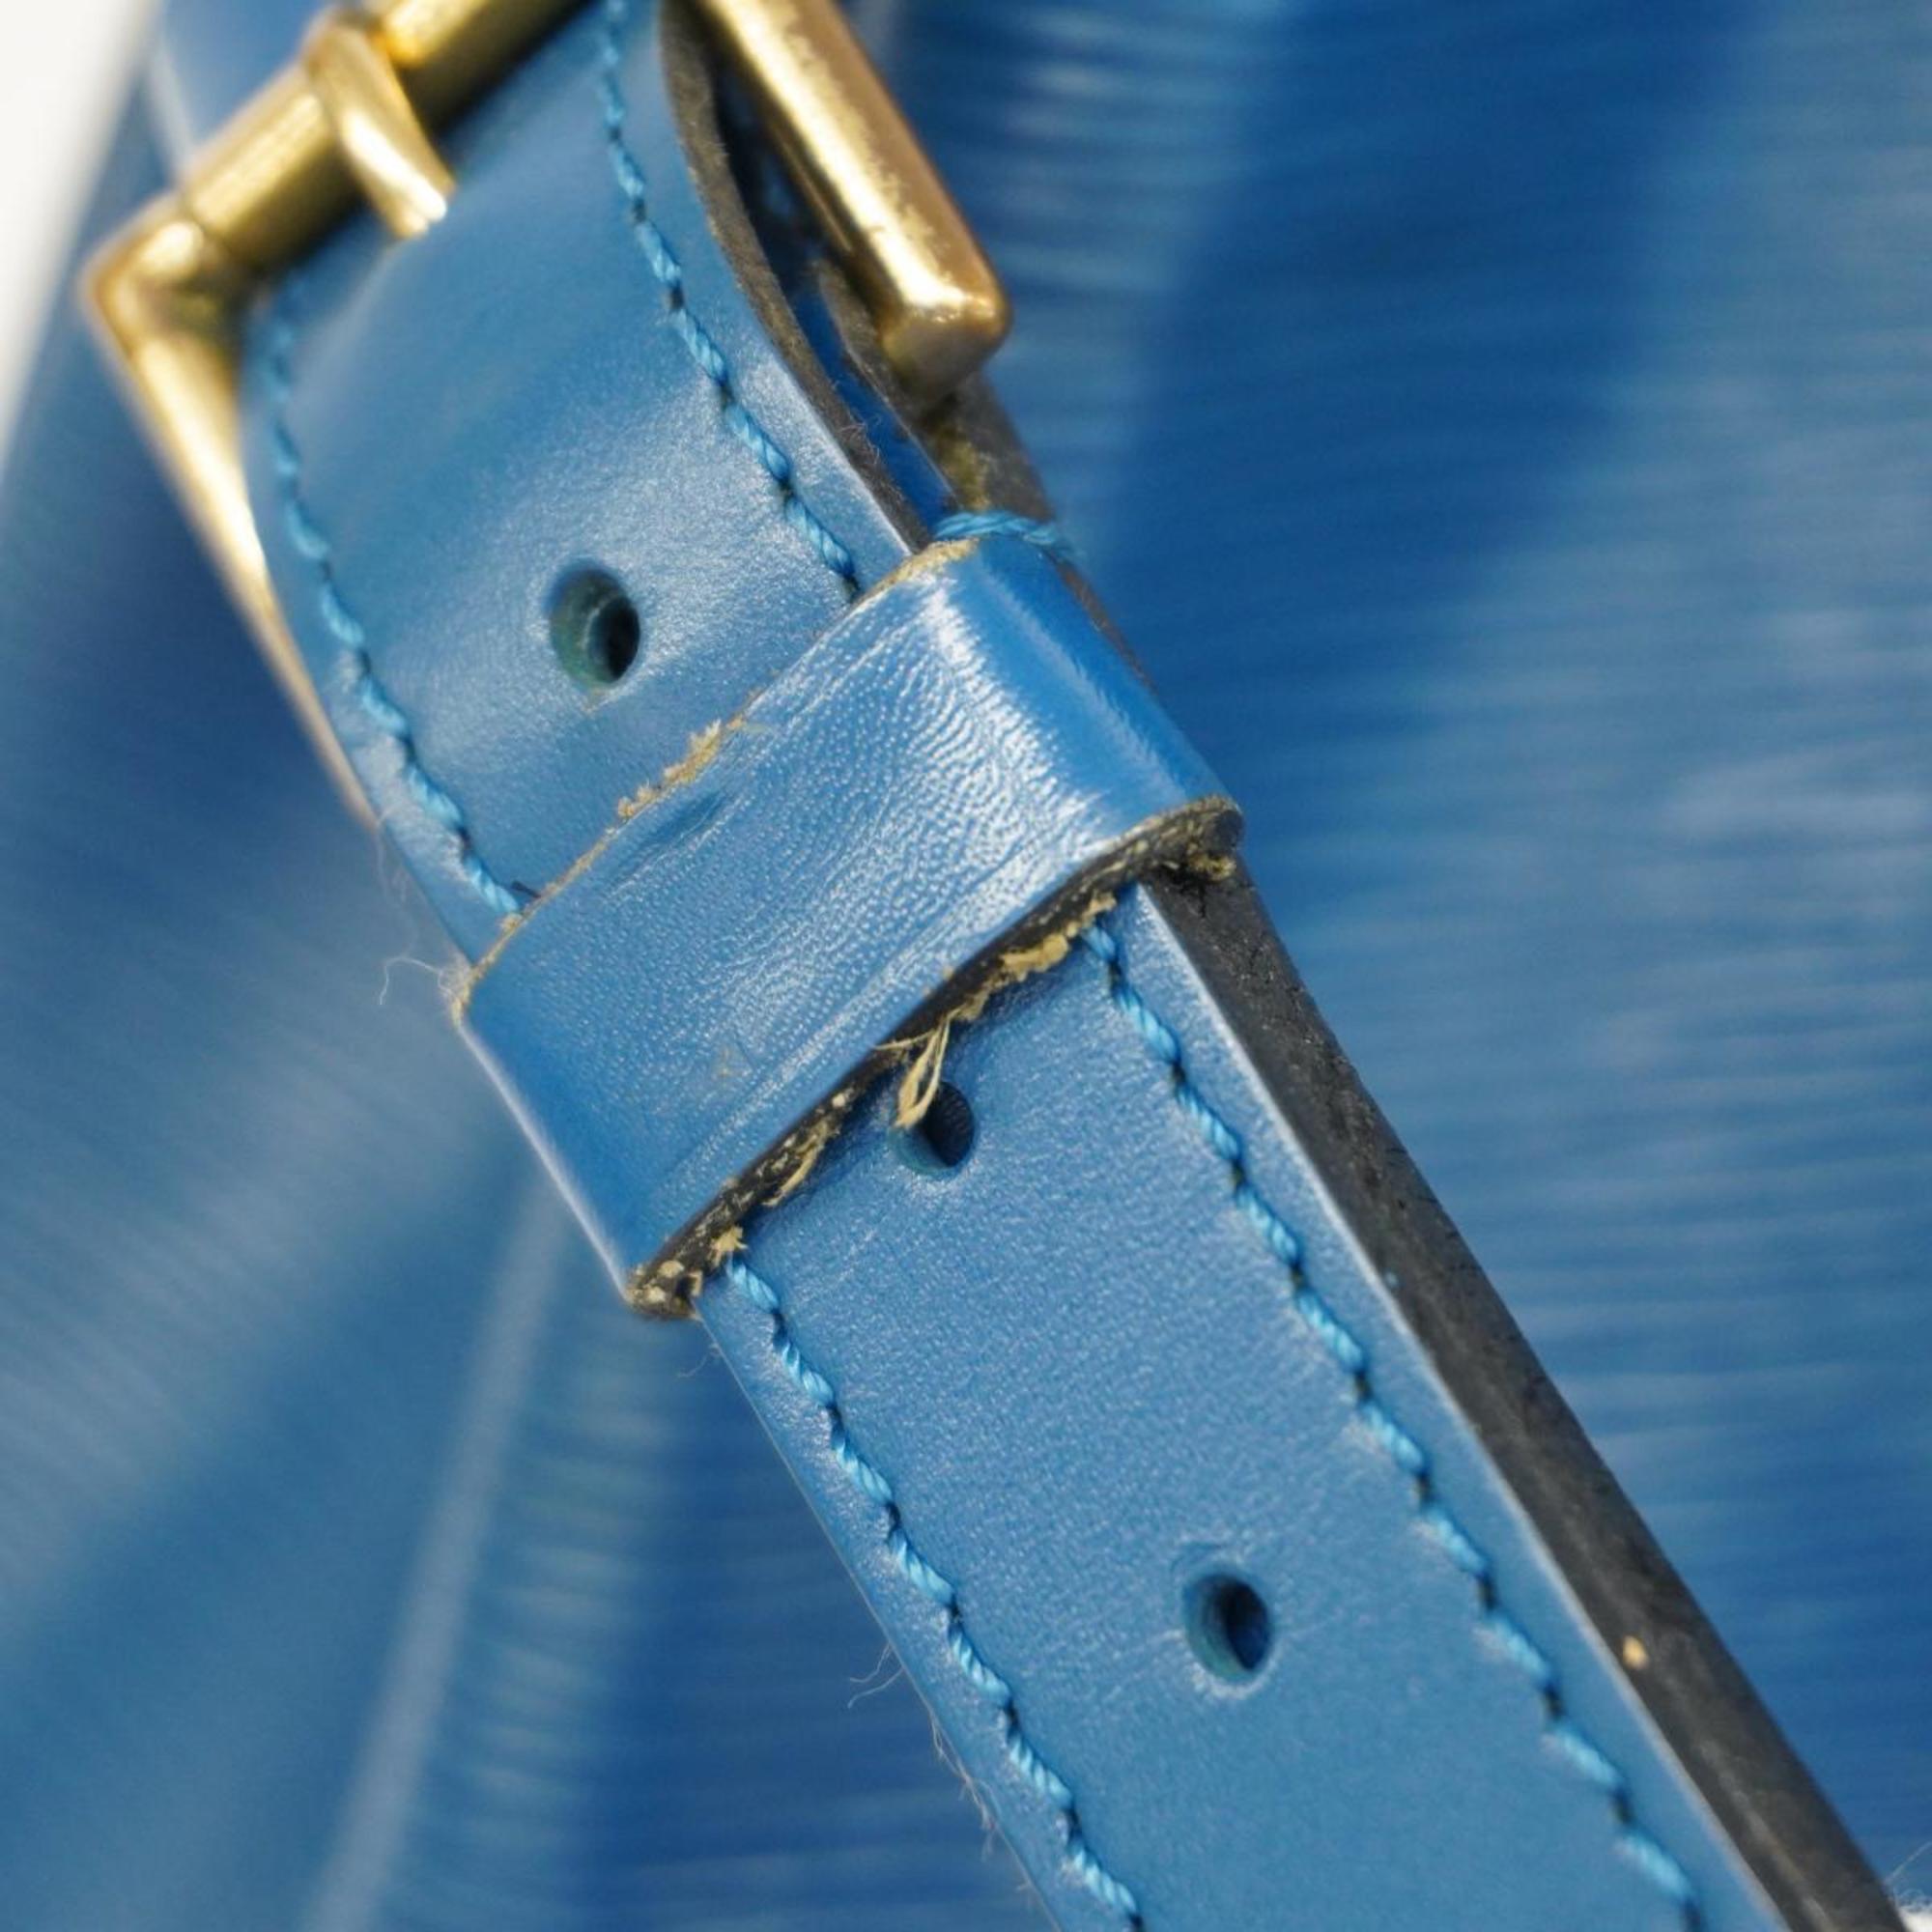 Louis Vuitton Shoulder Bag Epi Noe M44005 Toledo Blue Ladies